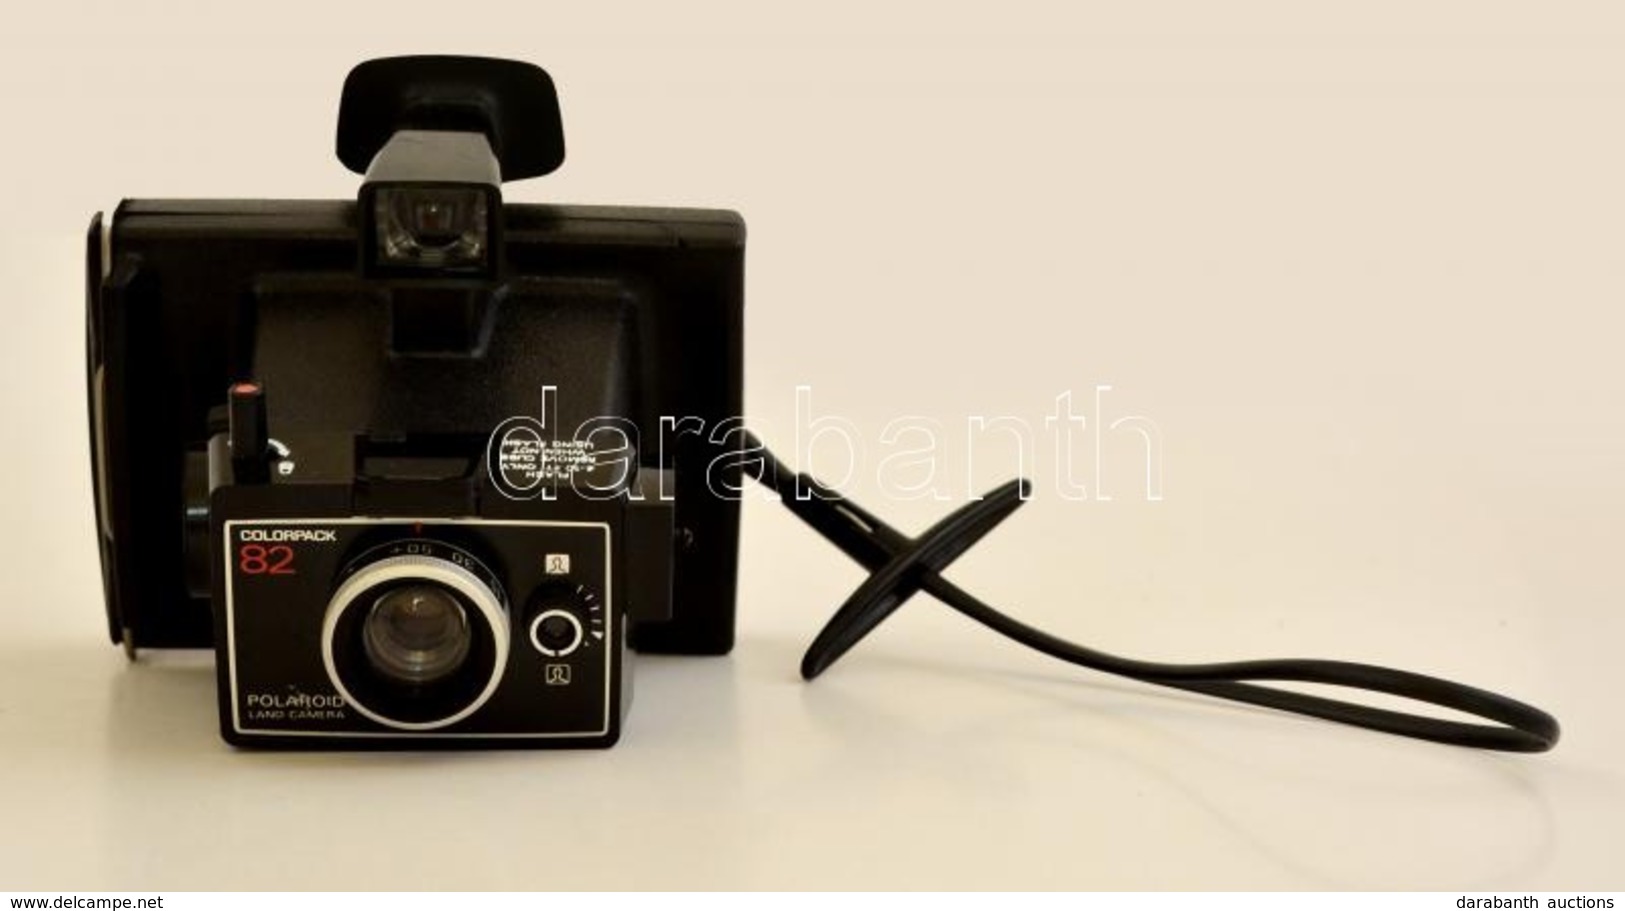 Cca 1973 Polaroid Colorpack 82 Fényképezőgép, Jó állapotban / Polaroid Instant Film Camera, In Good Condition - Fotoapparate